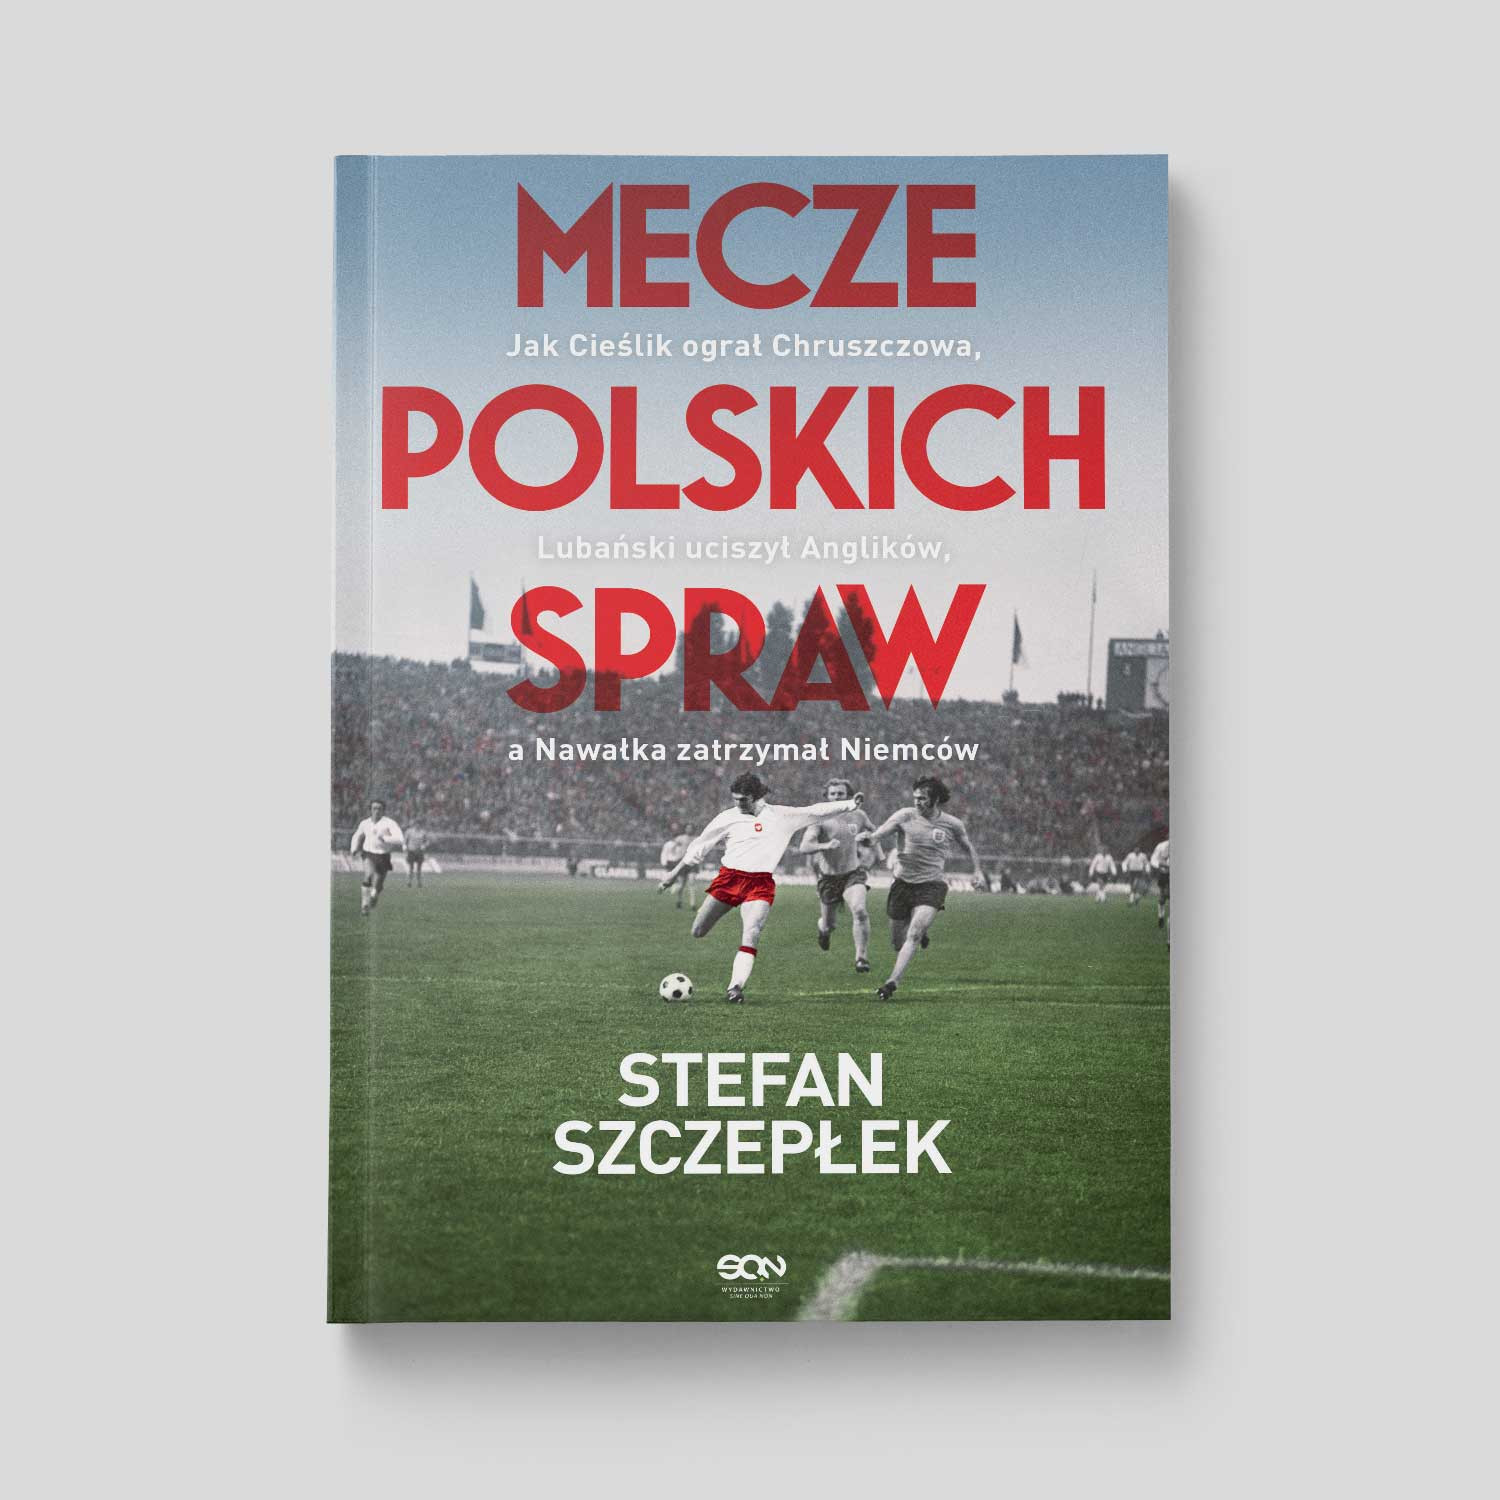 Okładka:Mecze polskich spraw. Jak Cieślik ograł Chruszczowa, Lubański uciszył Anglików, a Nawałka zatrzymał Niemców 